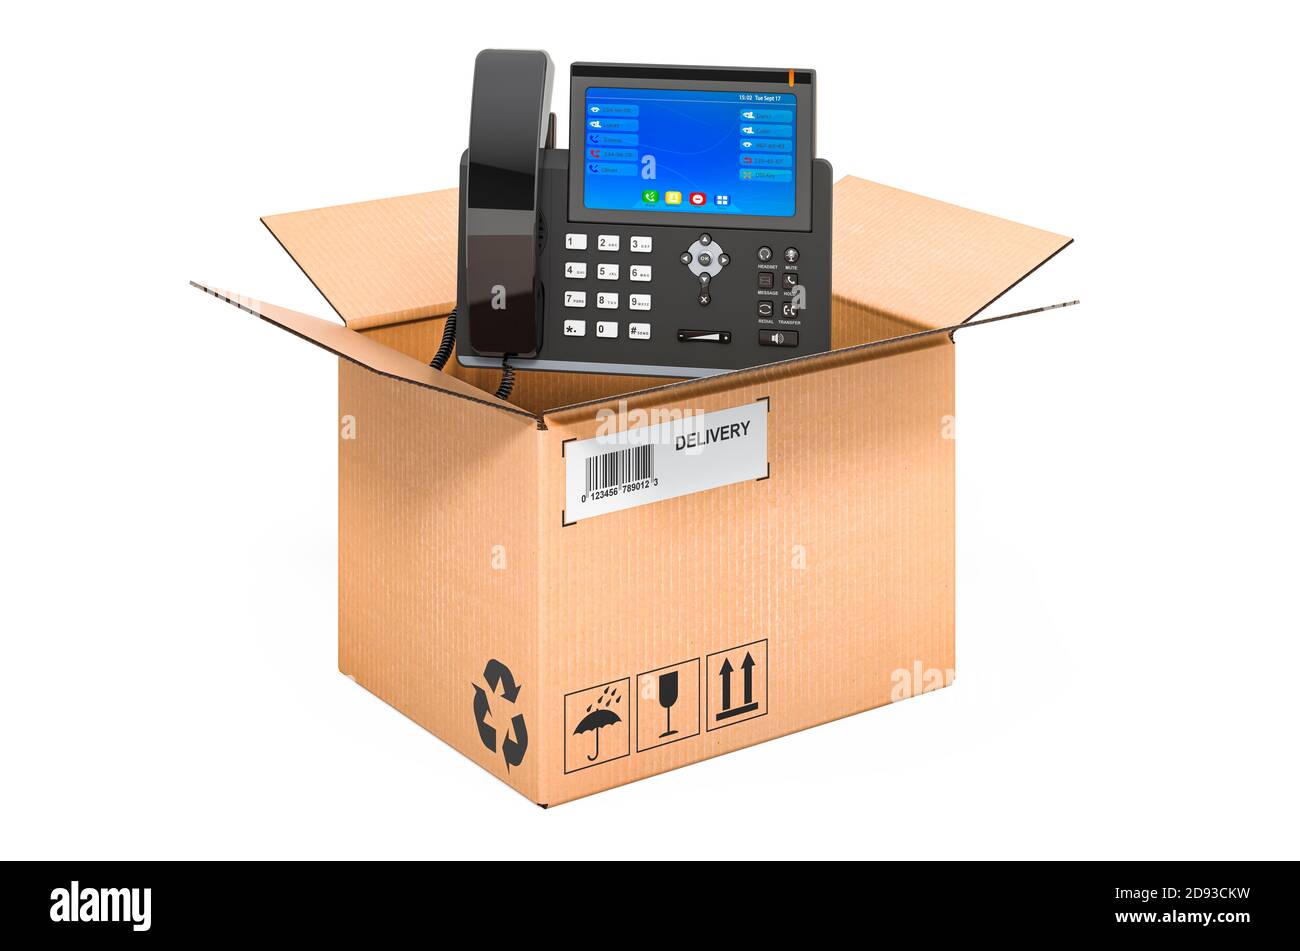 Telefono IP all'interno della scatola di cartone, concetto di consegna. Rendering 3D isolato su sfondo bianco Foto Stock